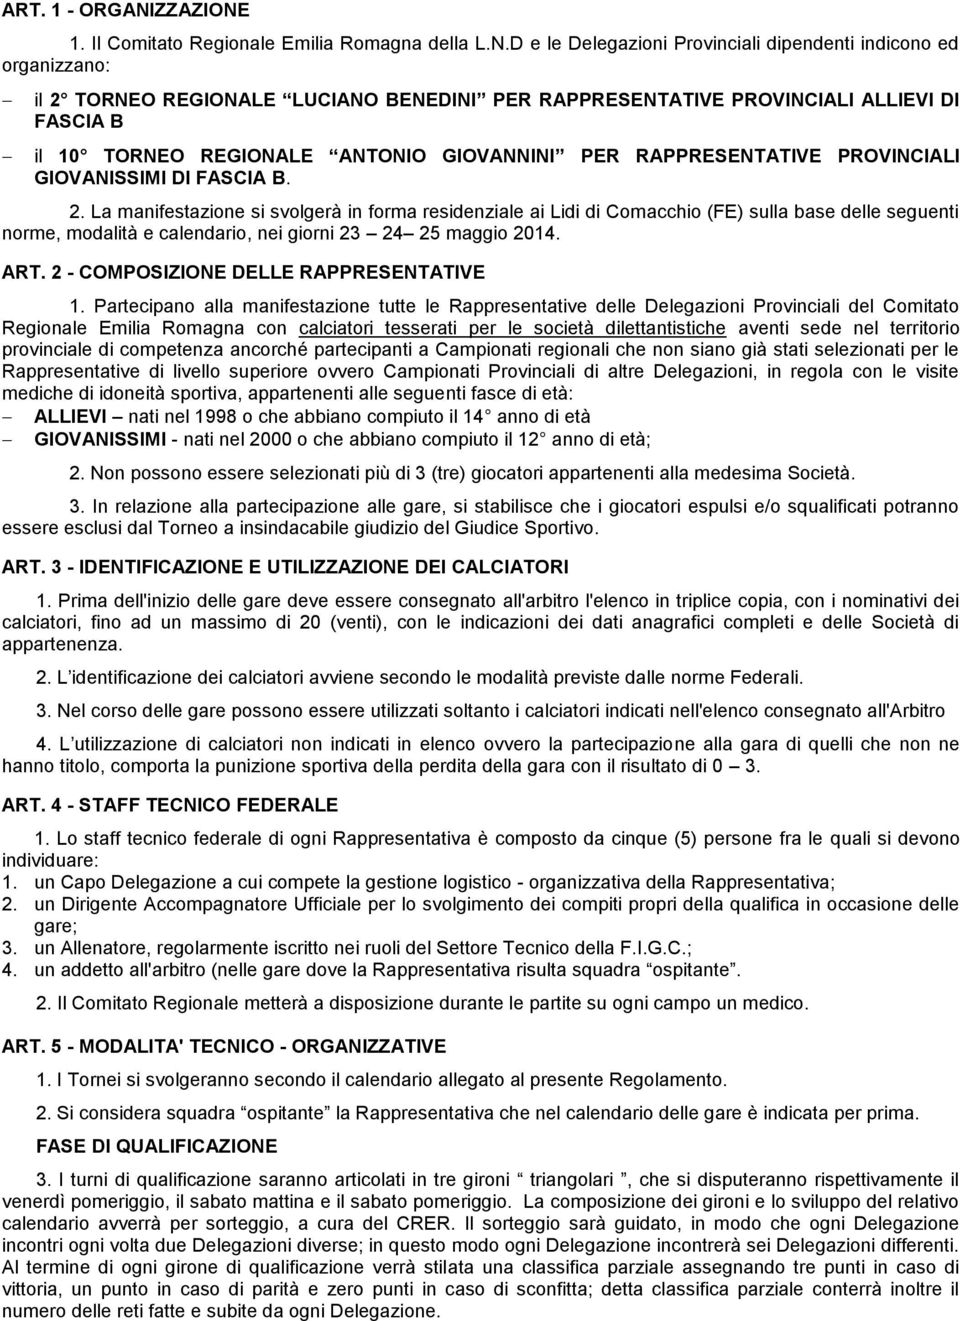 1. Il Comitato Regionale Emilia Romagna della L.N.